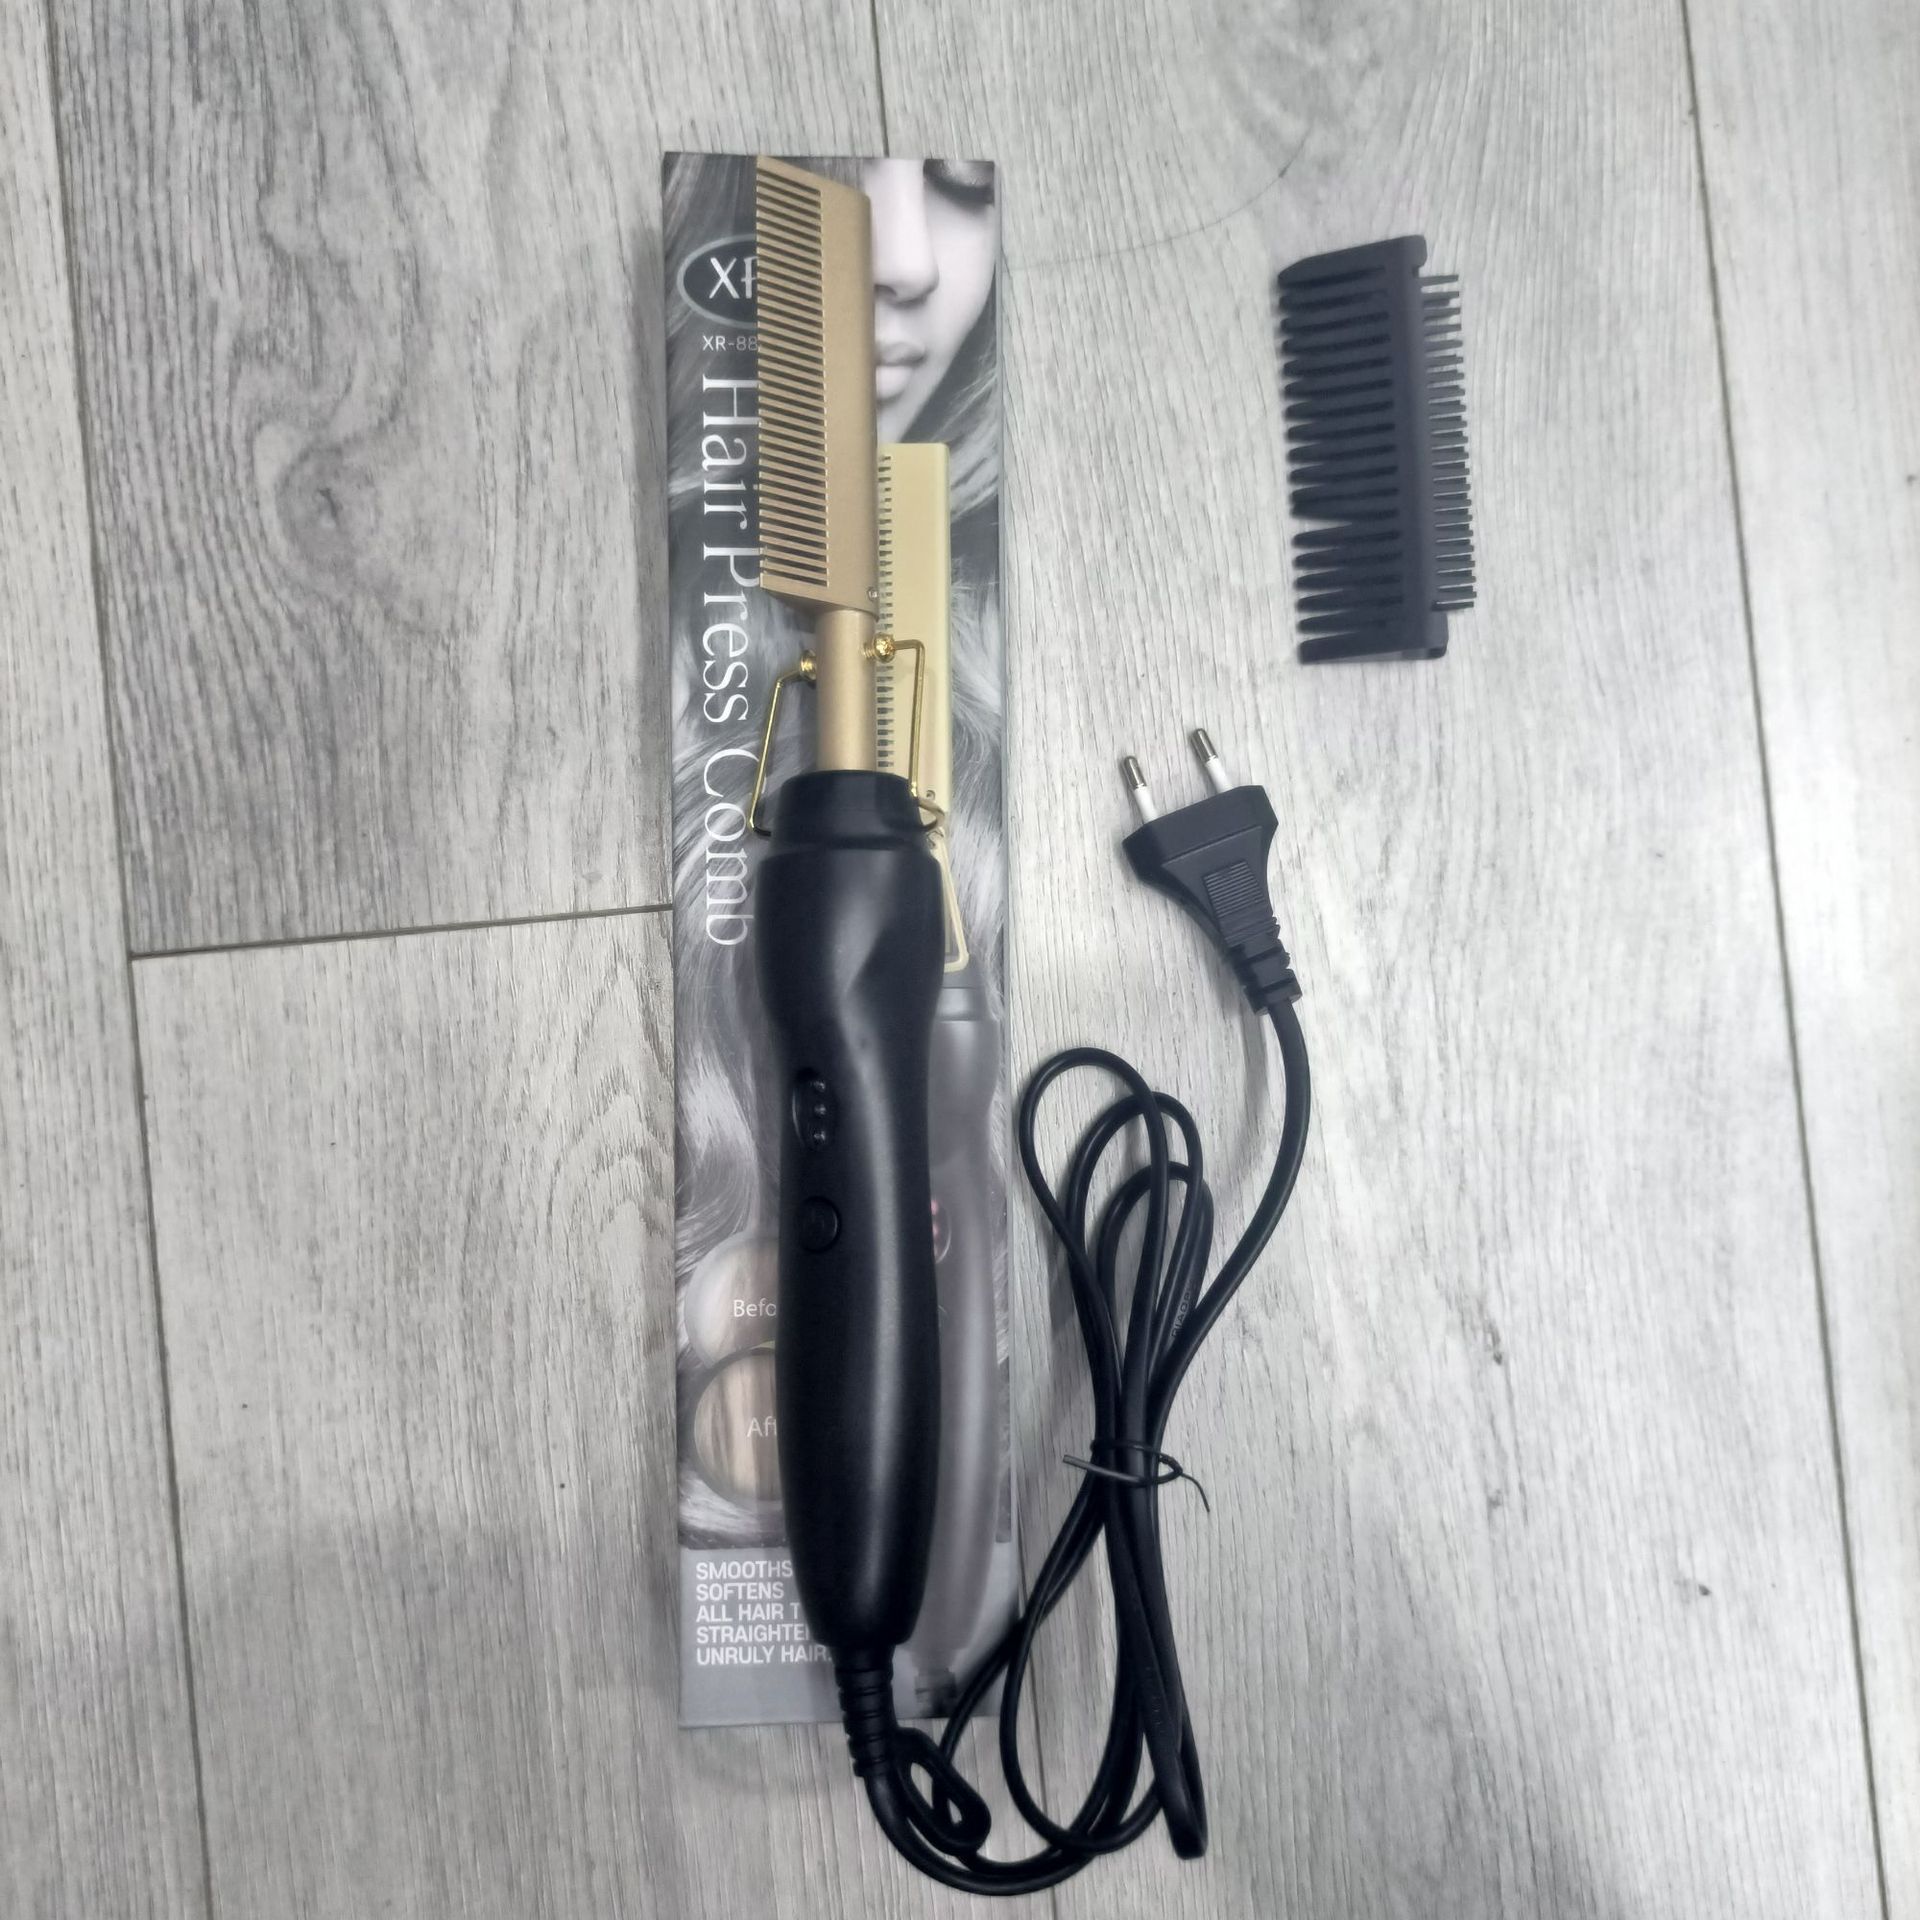 Peigne électrique chauffant 2 en 1, lisseur de cheveux, bigoudi, fer à lisser, brosse à lisser, outil de coiffure